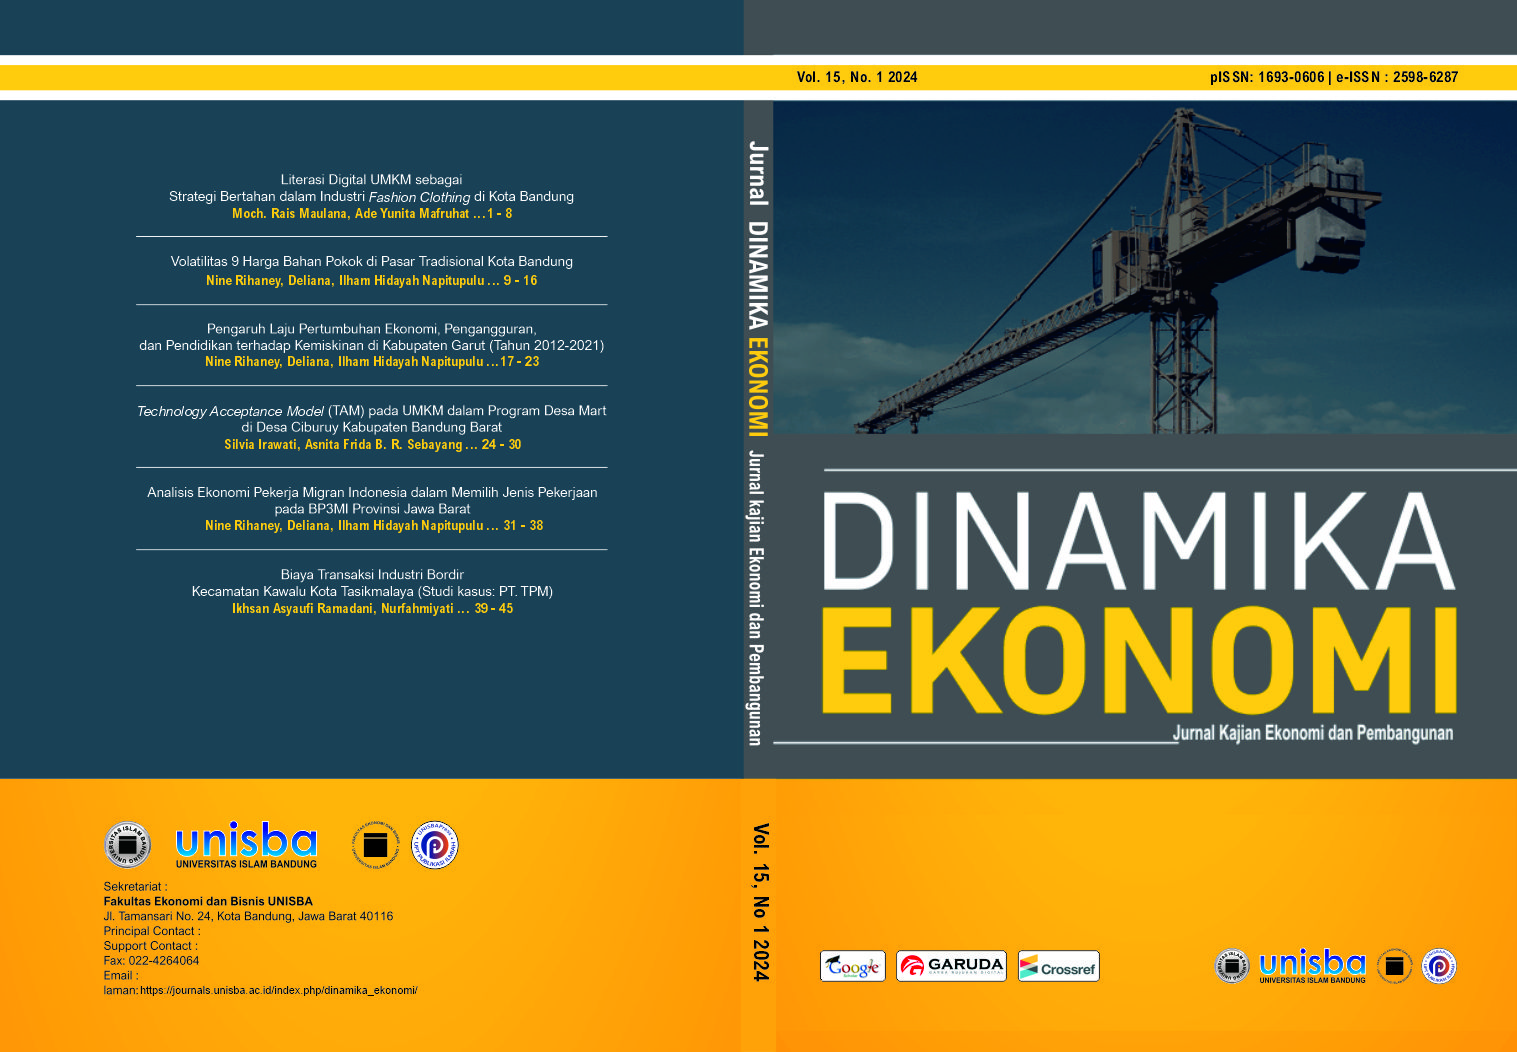 					View Vol 15, No 1 (2024): Dinamika Ekonomi: Jurnal Kajian Ekonomi dan Pembangunan
				